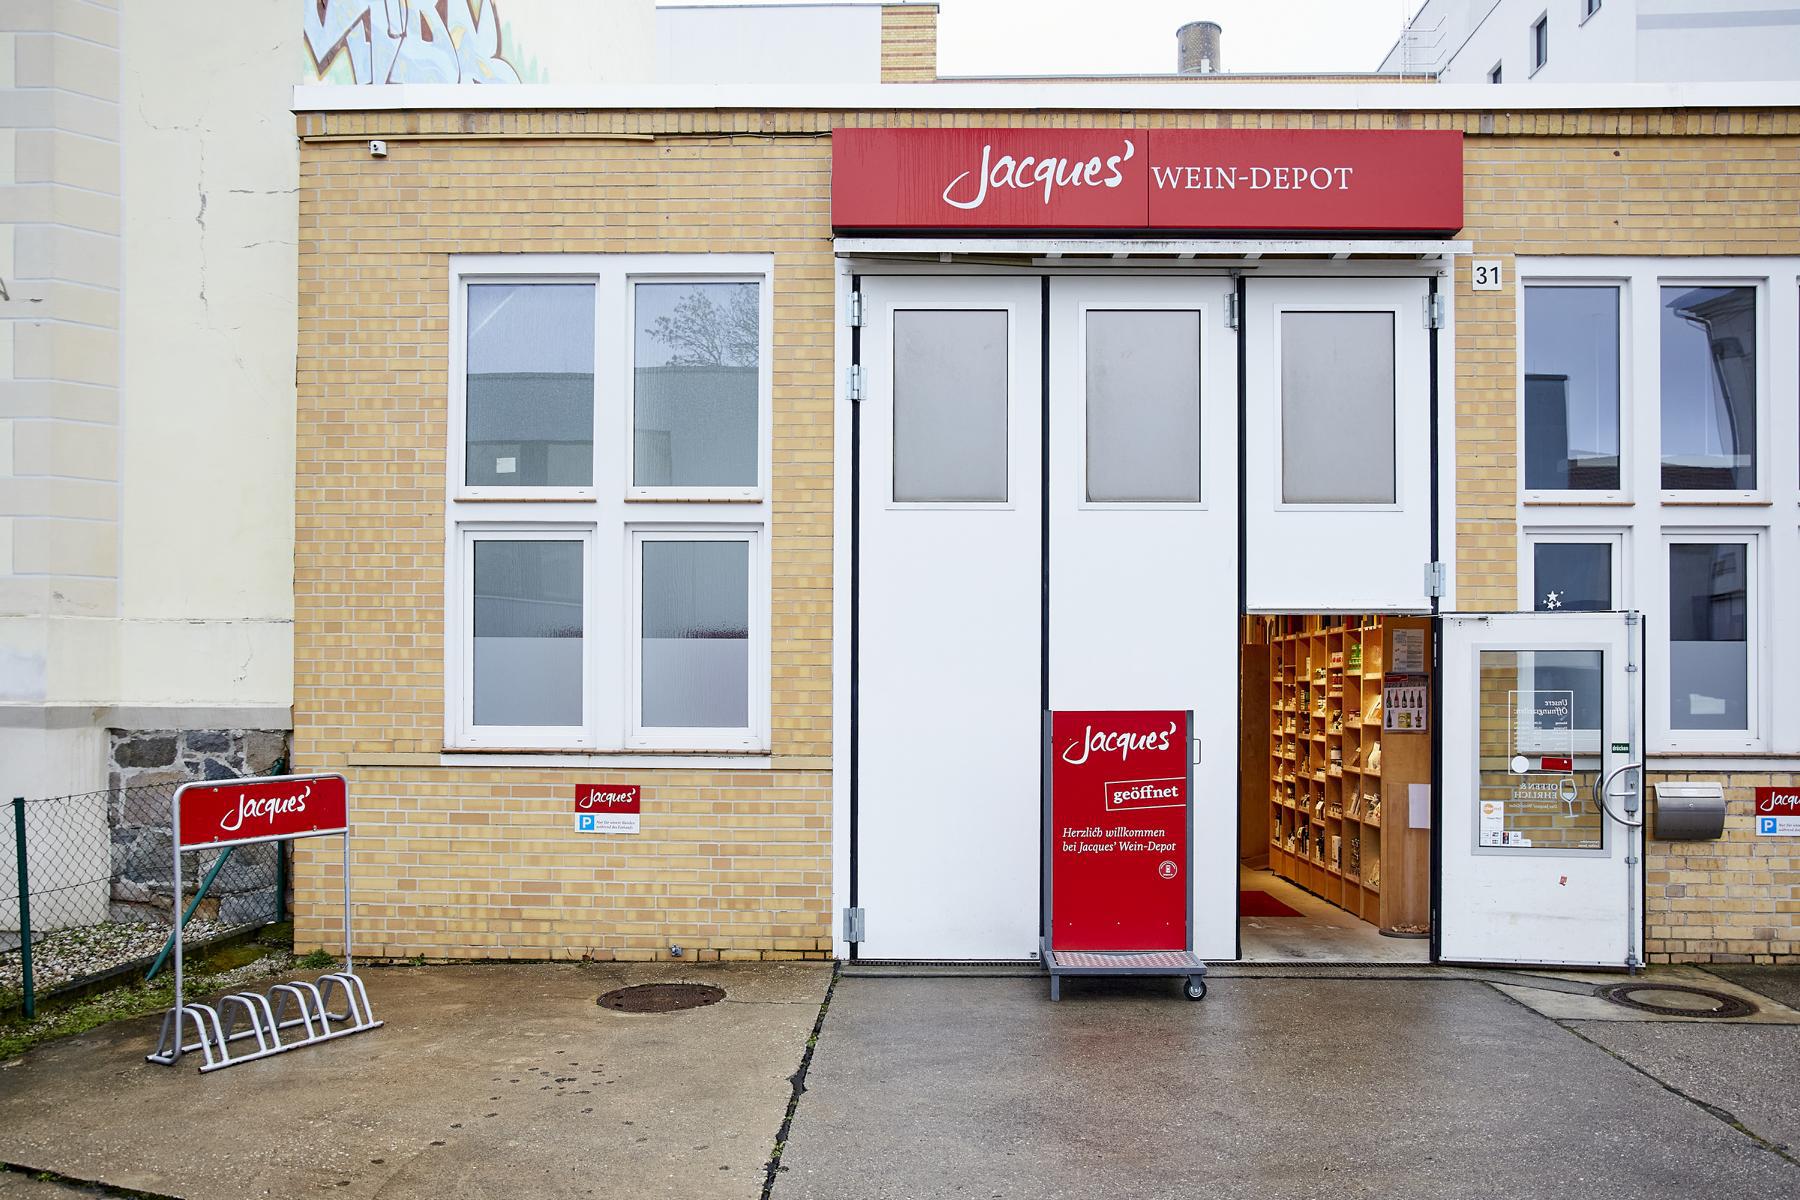 Bild 2 Jacques’ Wein-Depot Leipzig-Südvorstadt in Leipzig